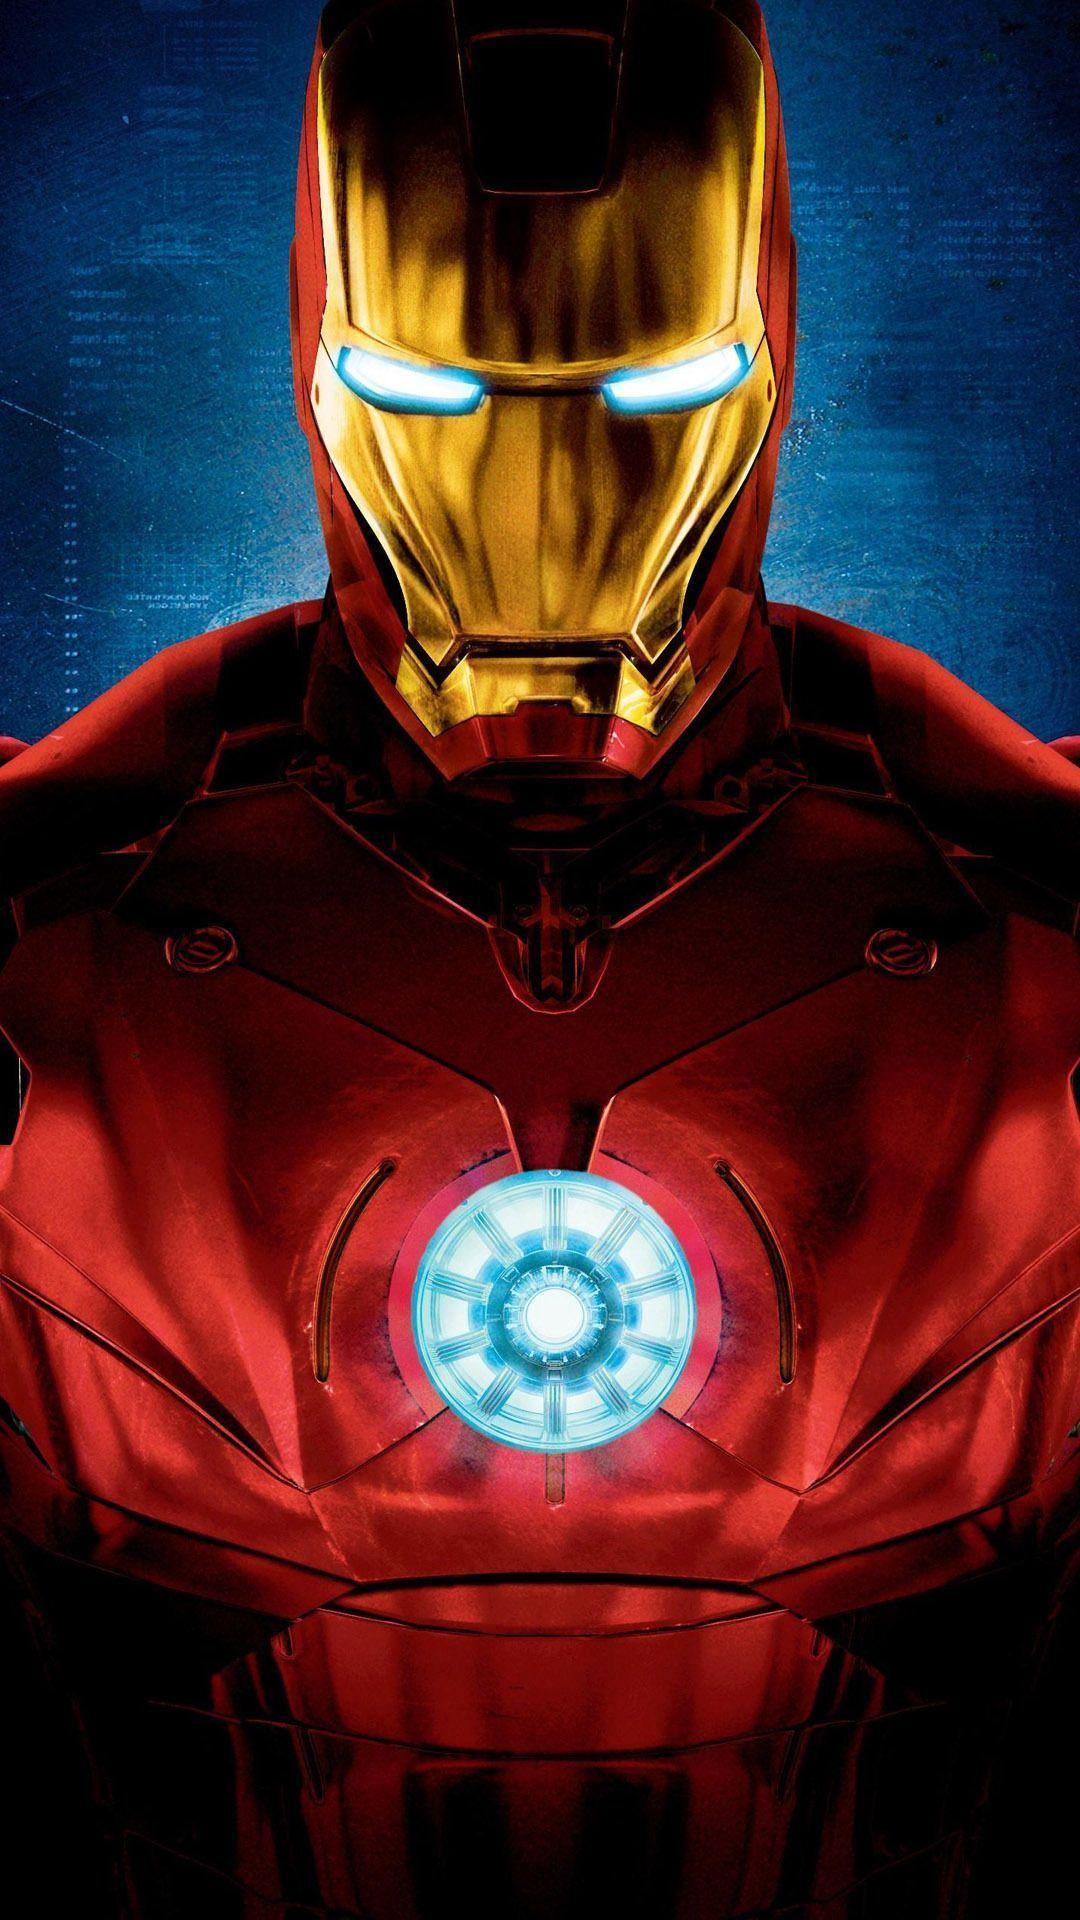 1080x1920 Iron man hình nền điện thoại di động